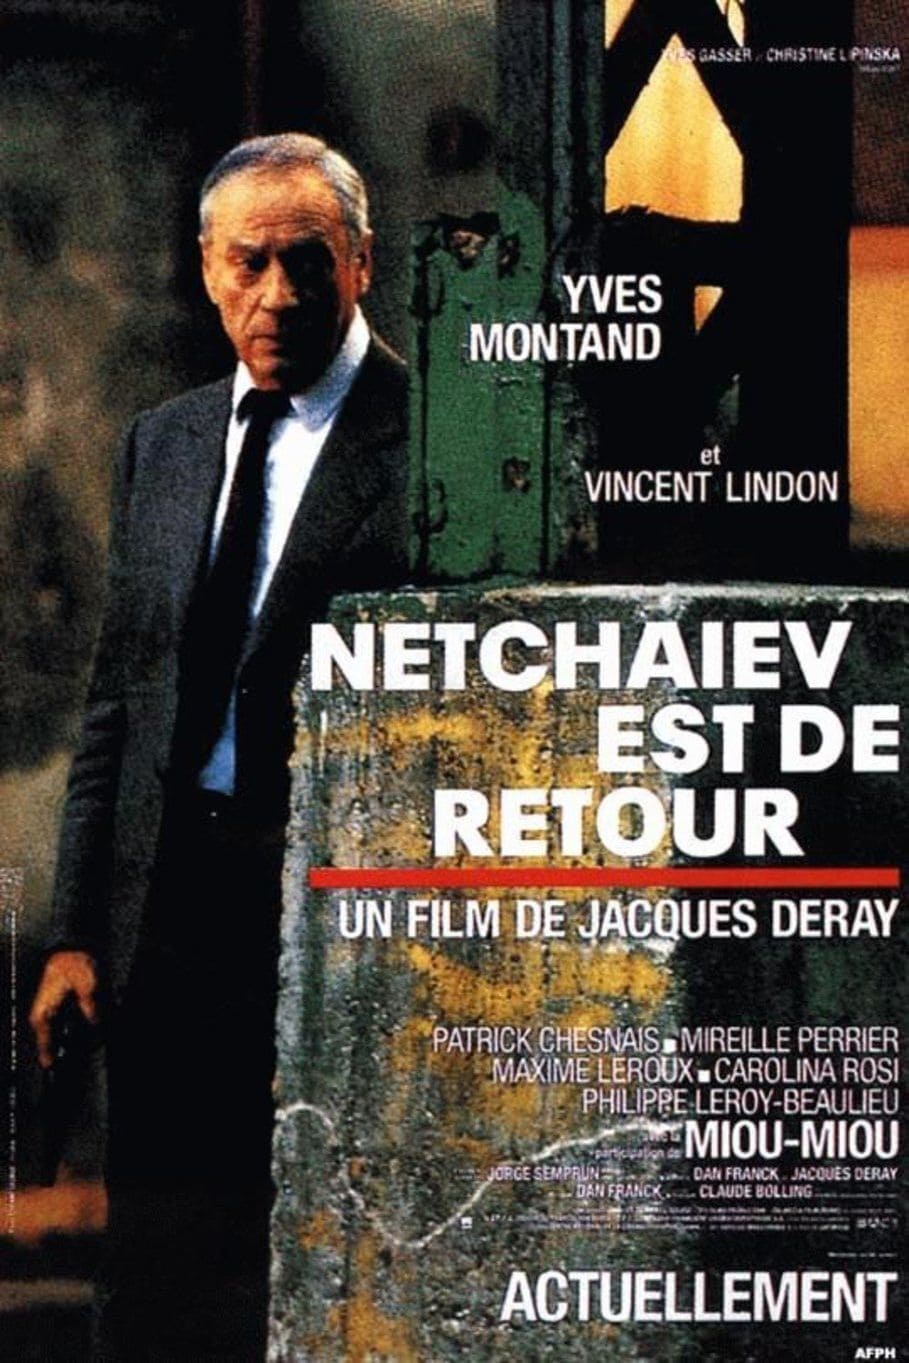 Netchaïev est de retour (1991)